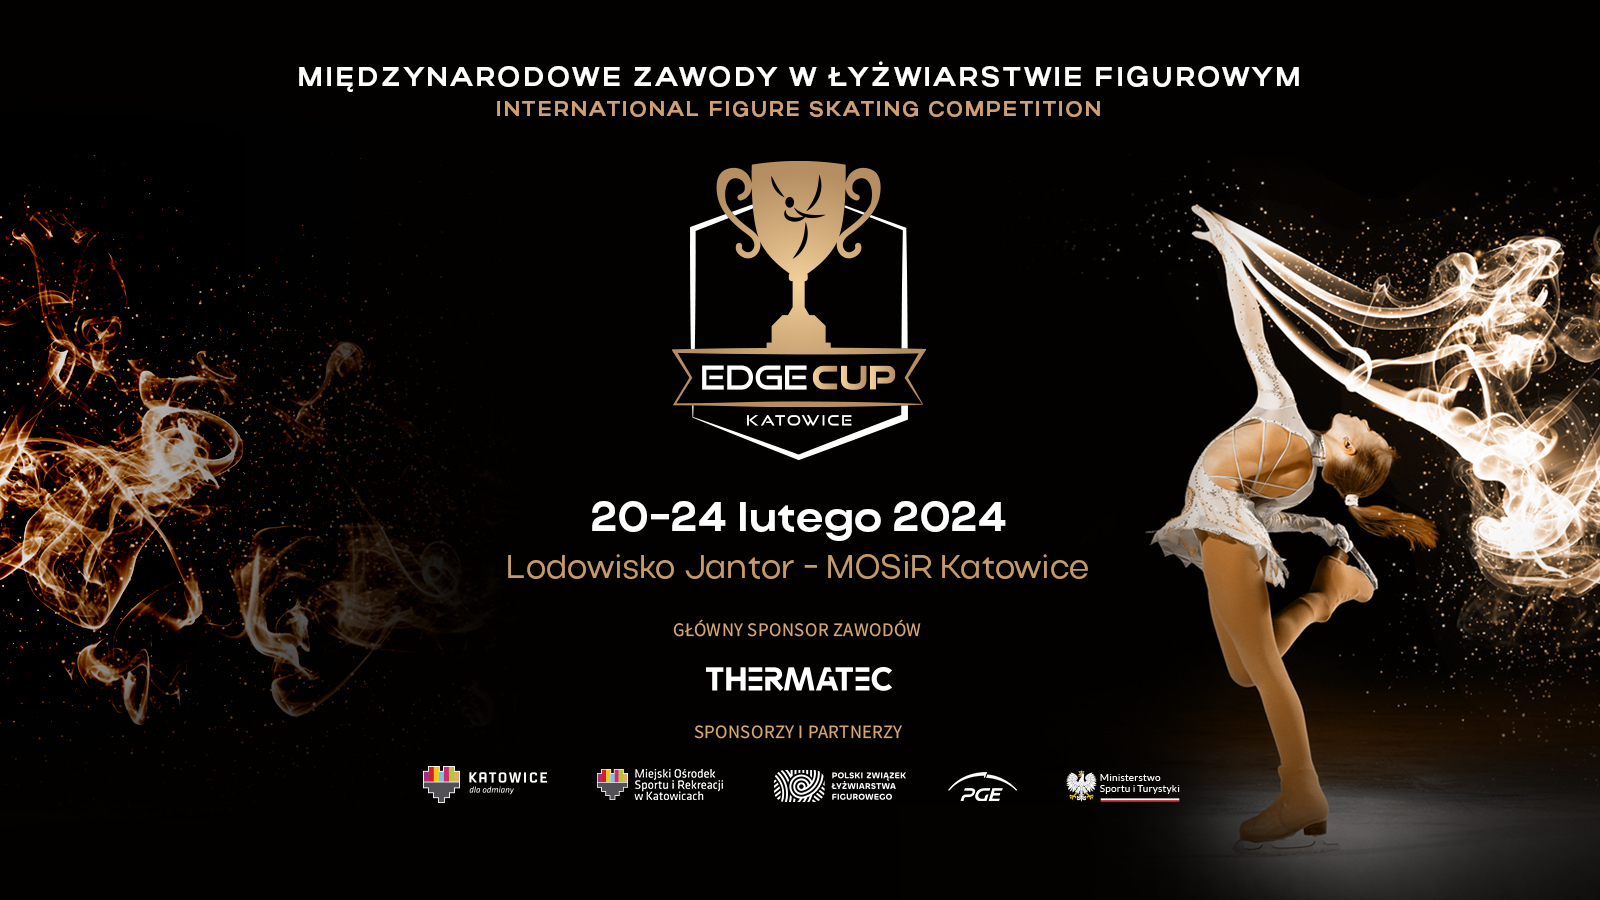 Międzynarodowe zawody w łyżwiarstwie figurowym EDGE CUP ponownie w Katowicach